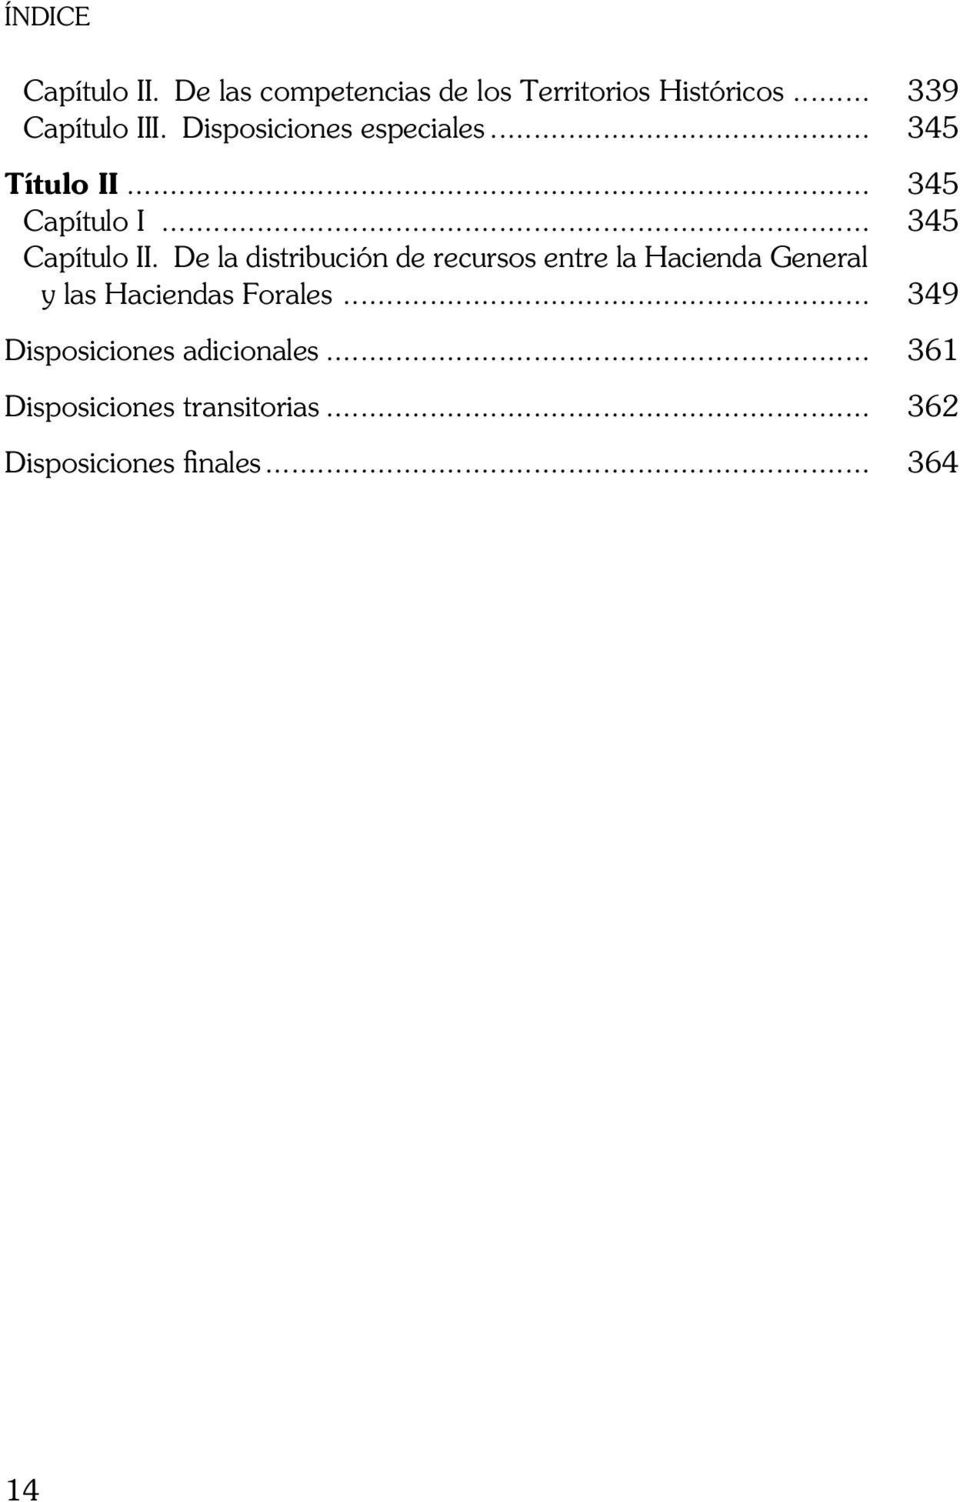 De la distribución de recursos entre la Hacienda General y las Haciendas Forales.